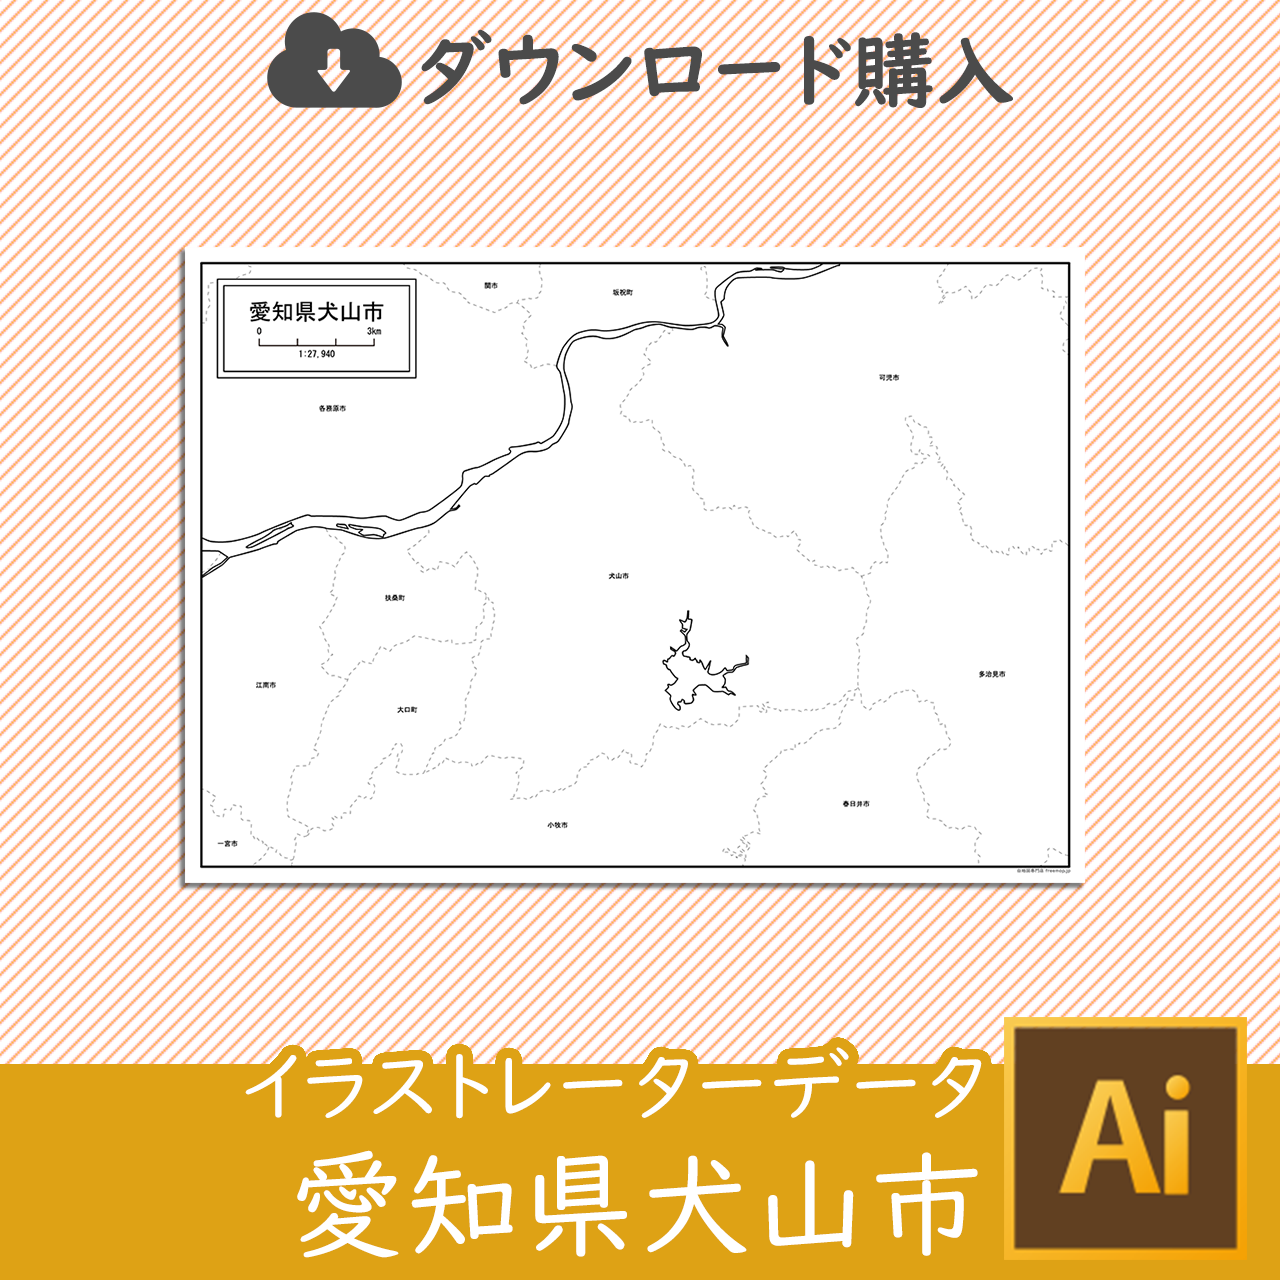 犬山市のaiデータのサムネイル画像